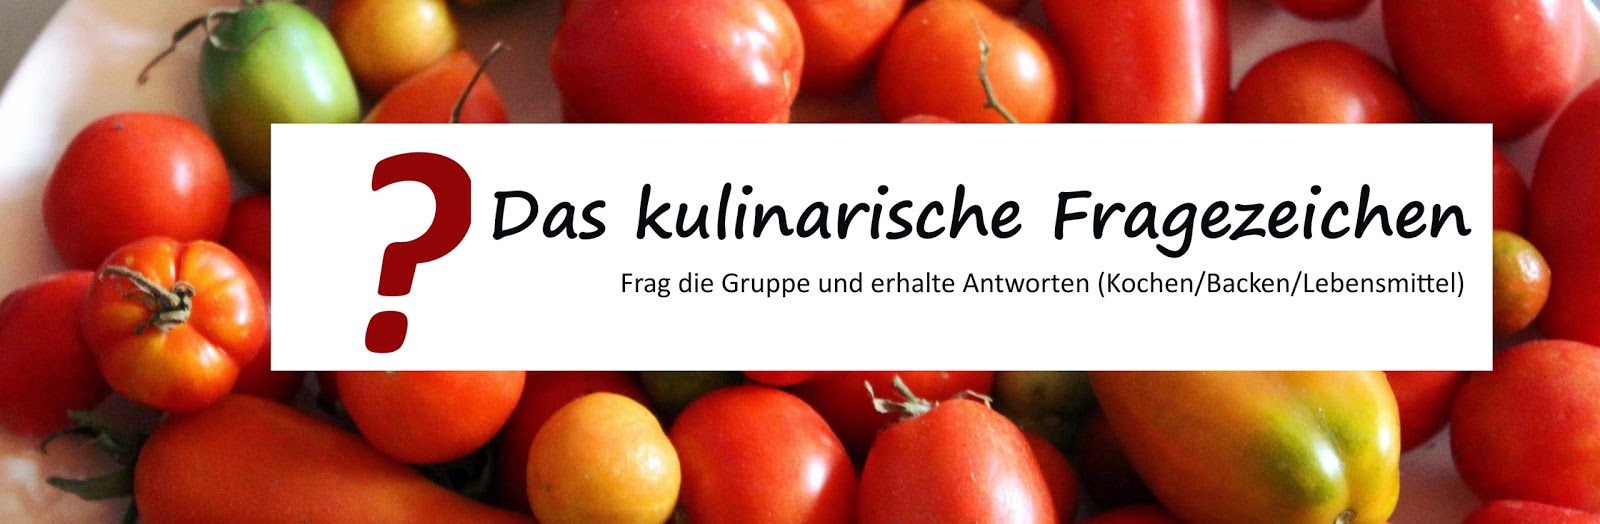 https://www.facebook.com/groups/KulinarischesFragezeichen/